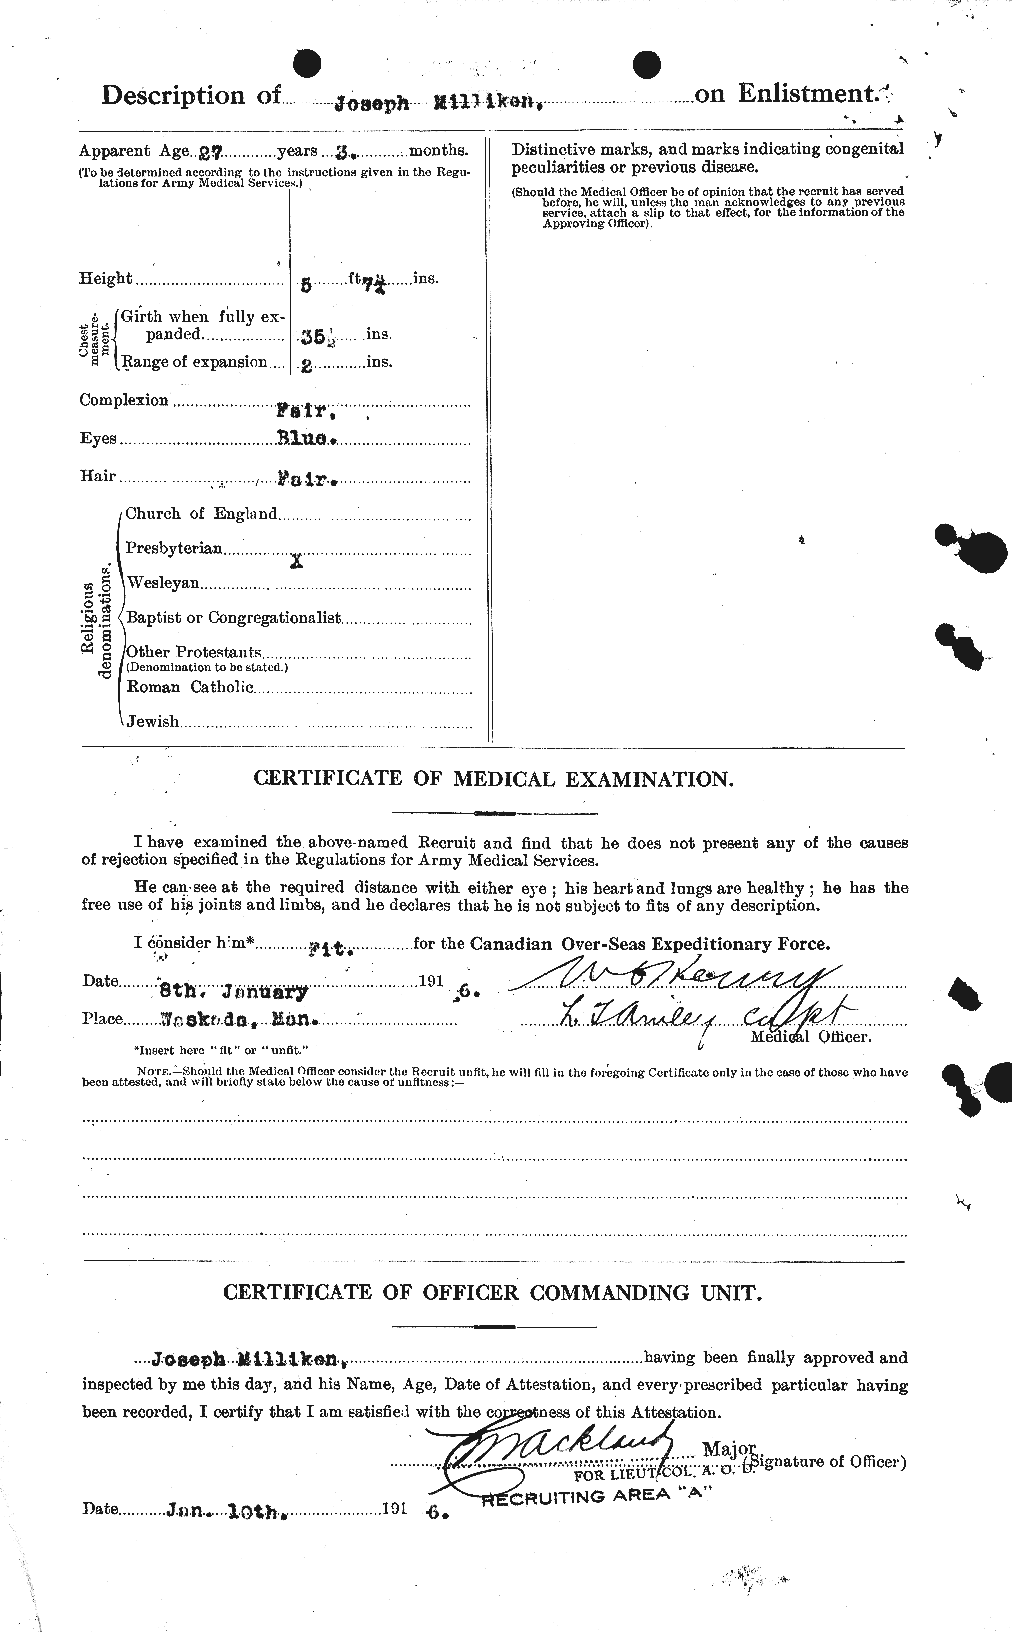 Dossiers du Personnel de la Première Guerre mondiale - CEC 496372b